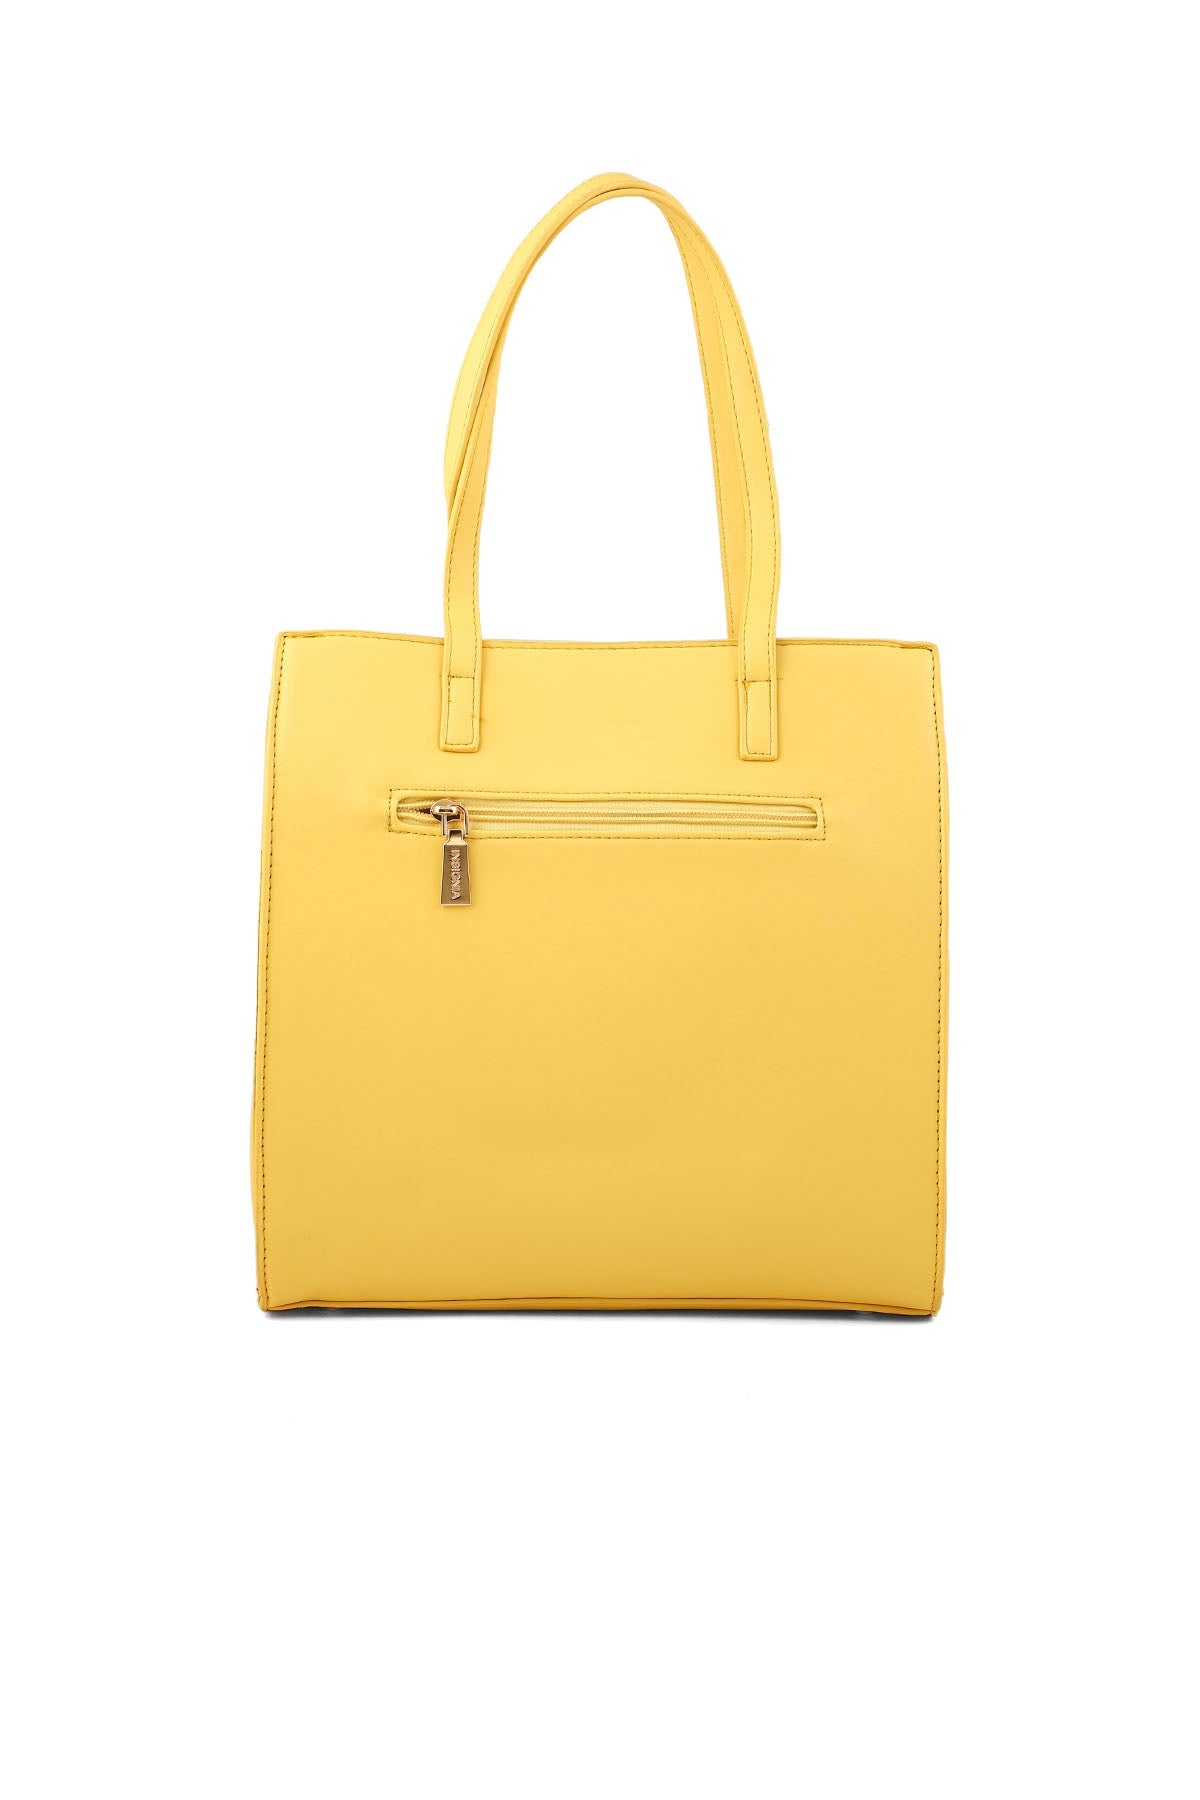 Bucket Hand Bags B15075-Yellow